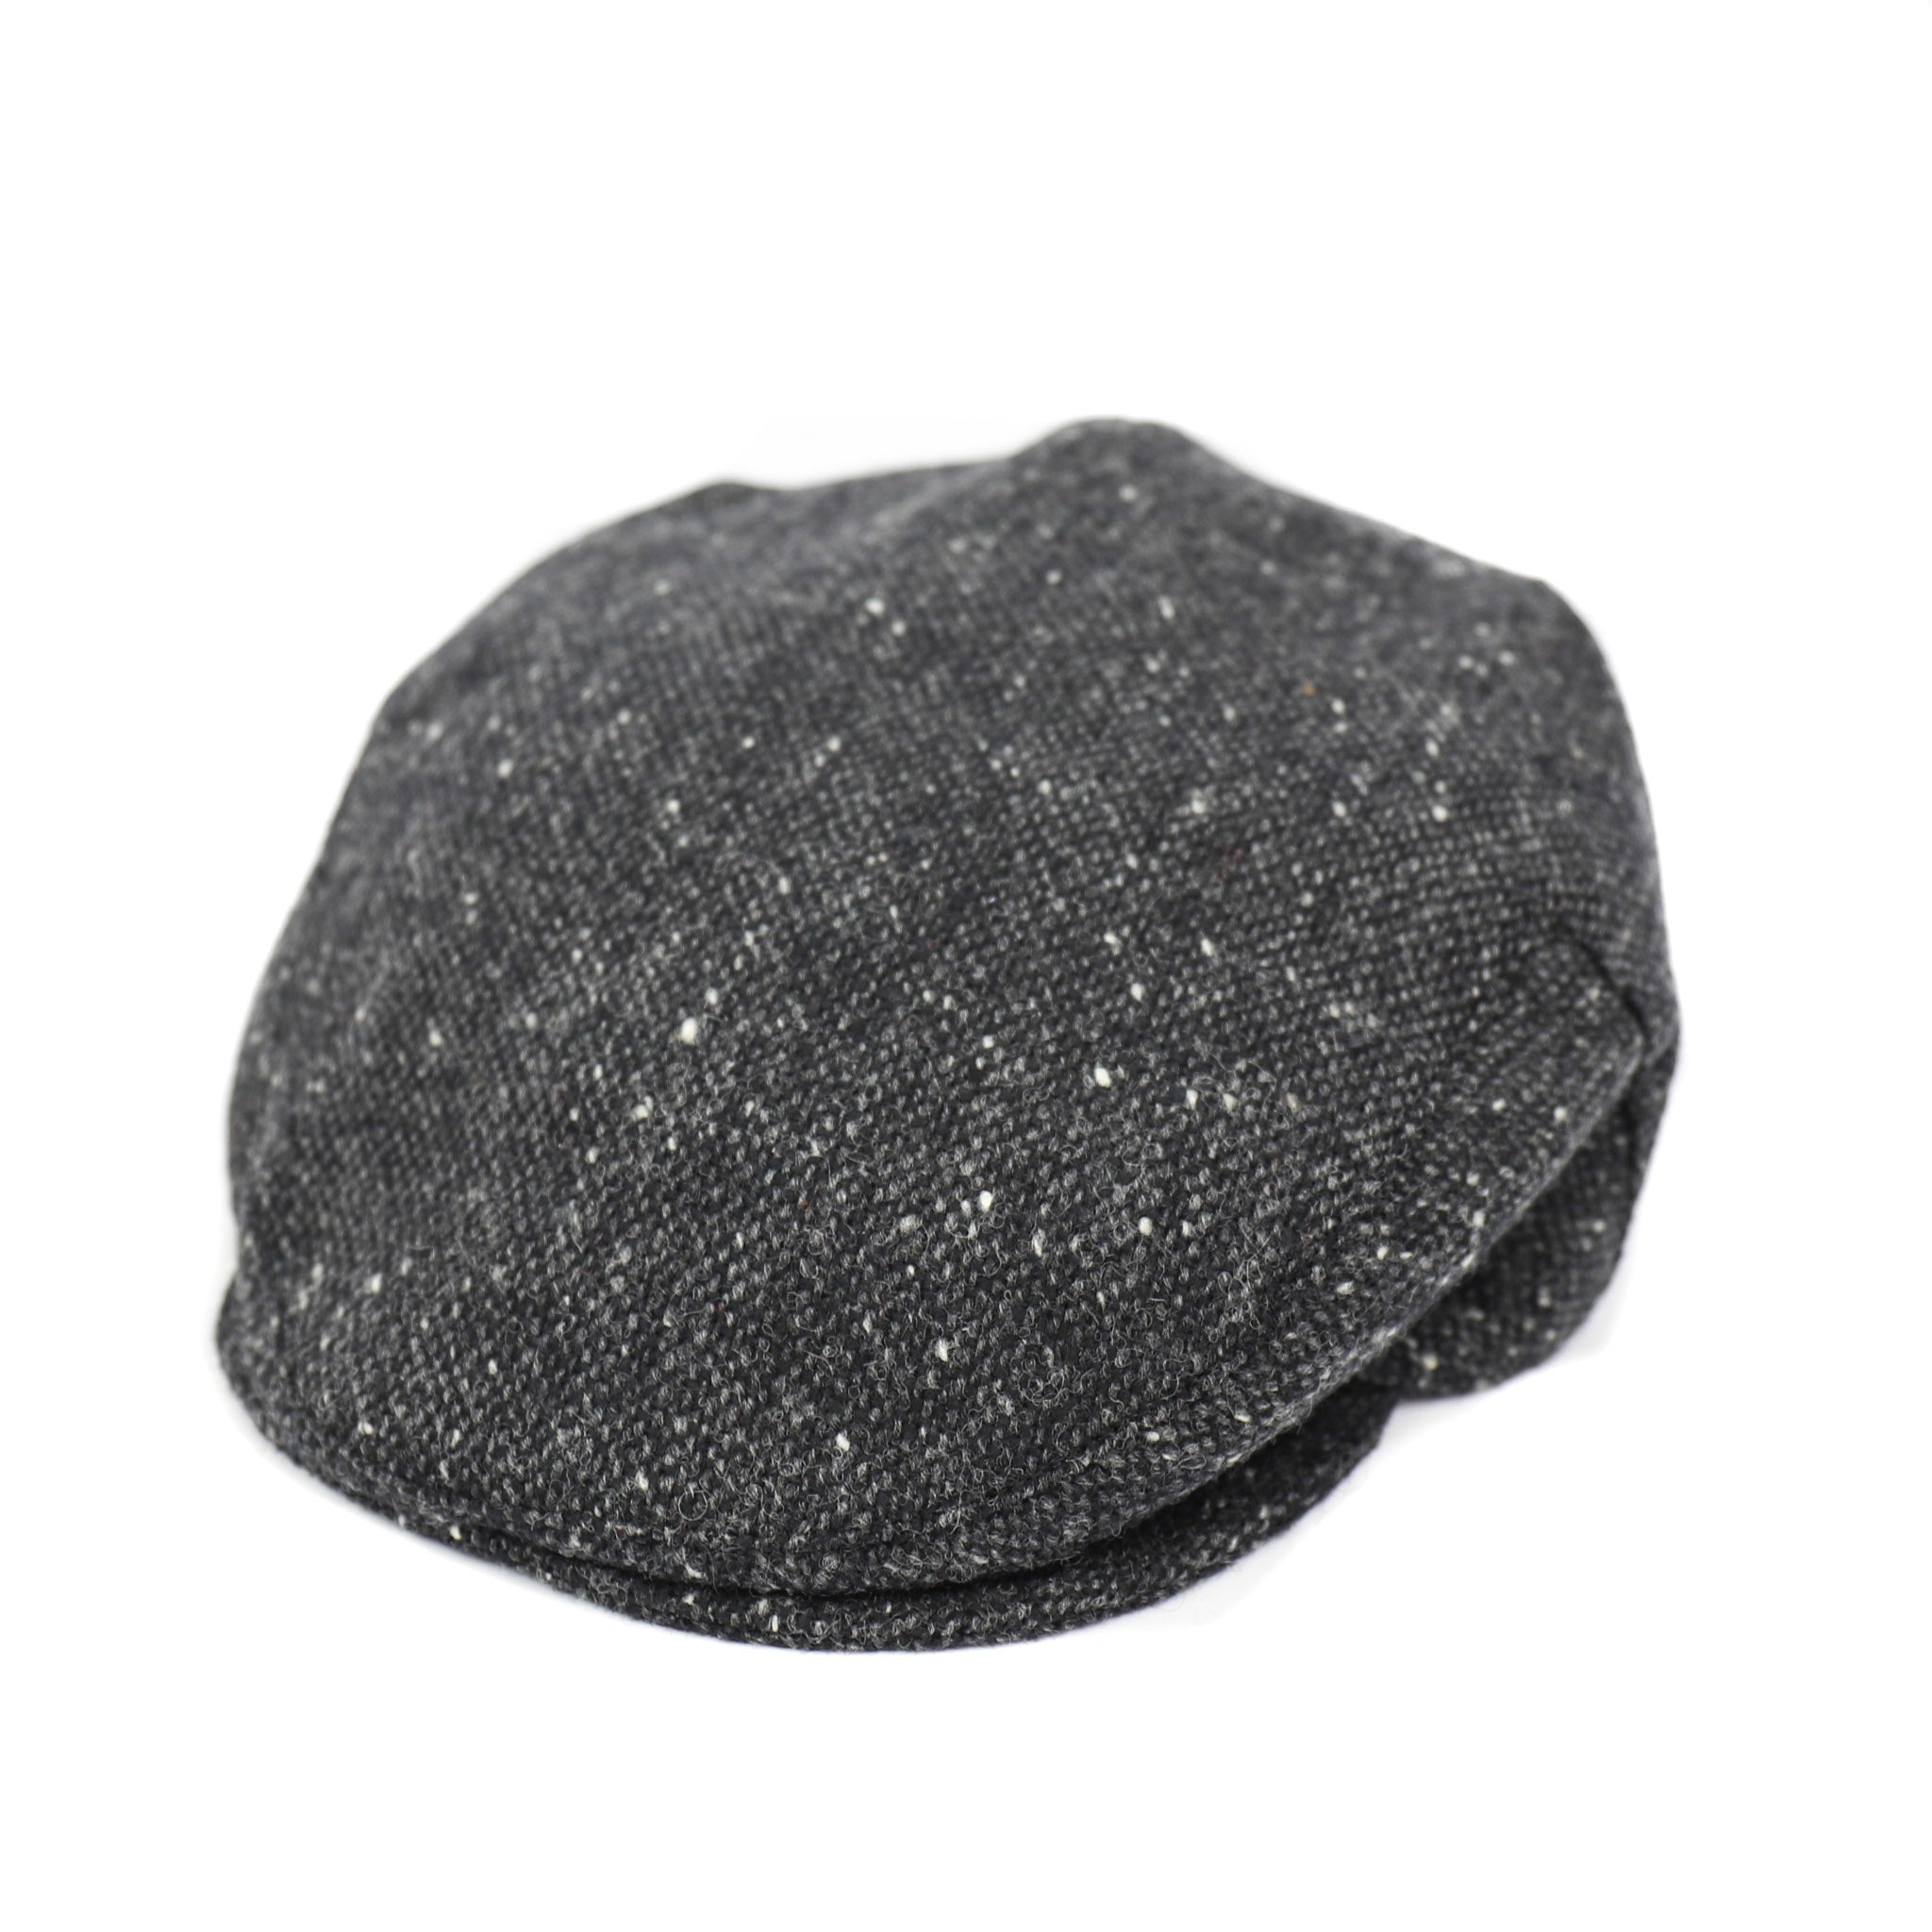 Flatcap Tweed - Gray/black (D 30)